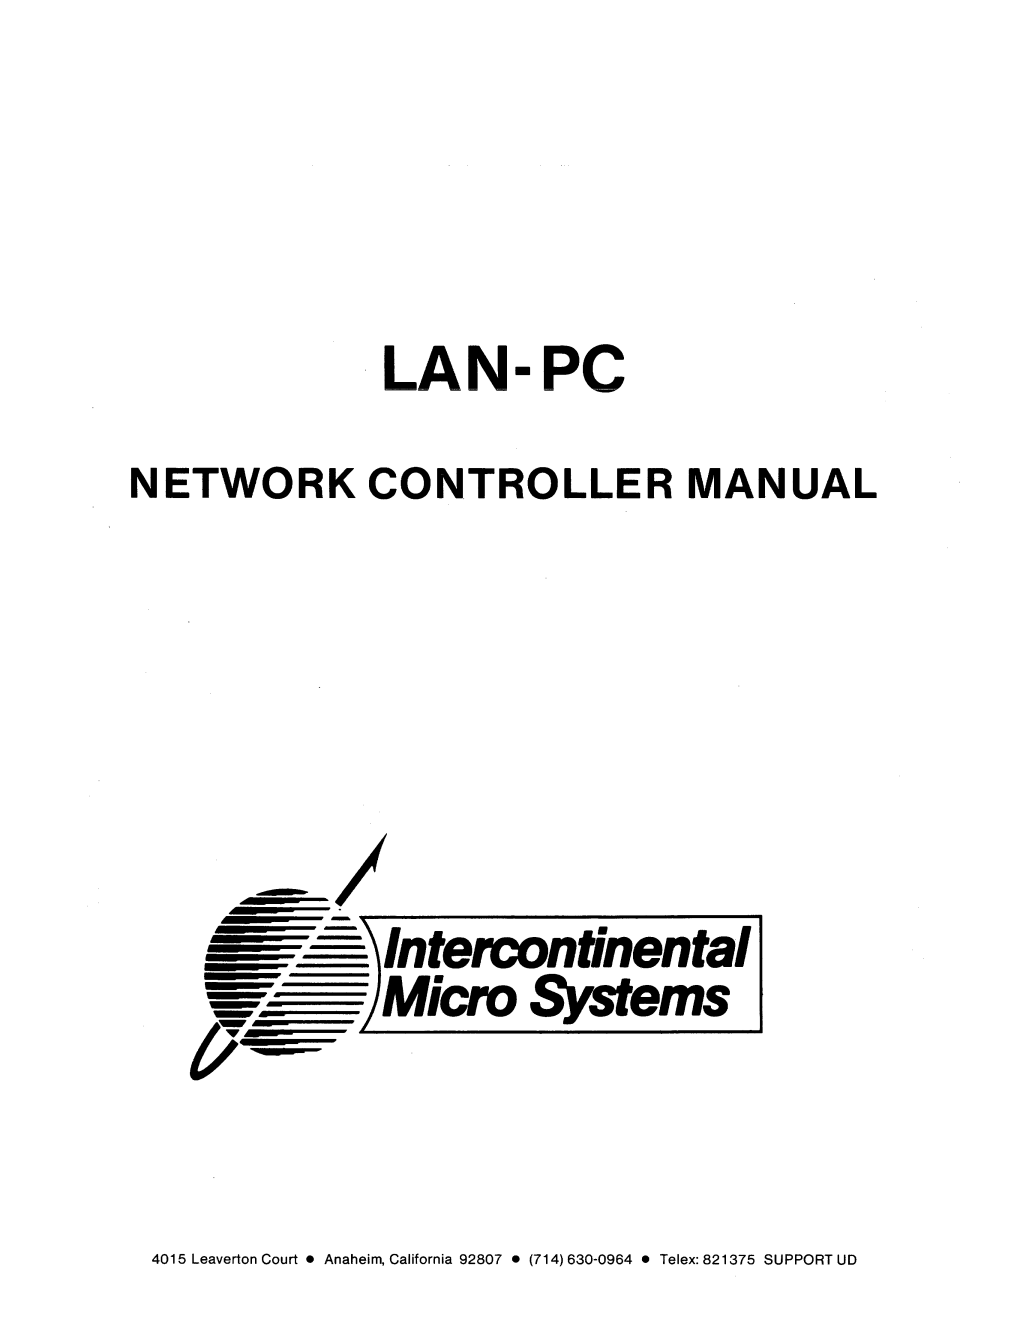 IMS LAN-PC 1984 Network Controller Manual